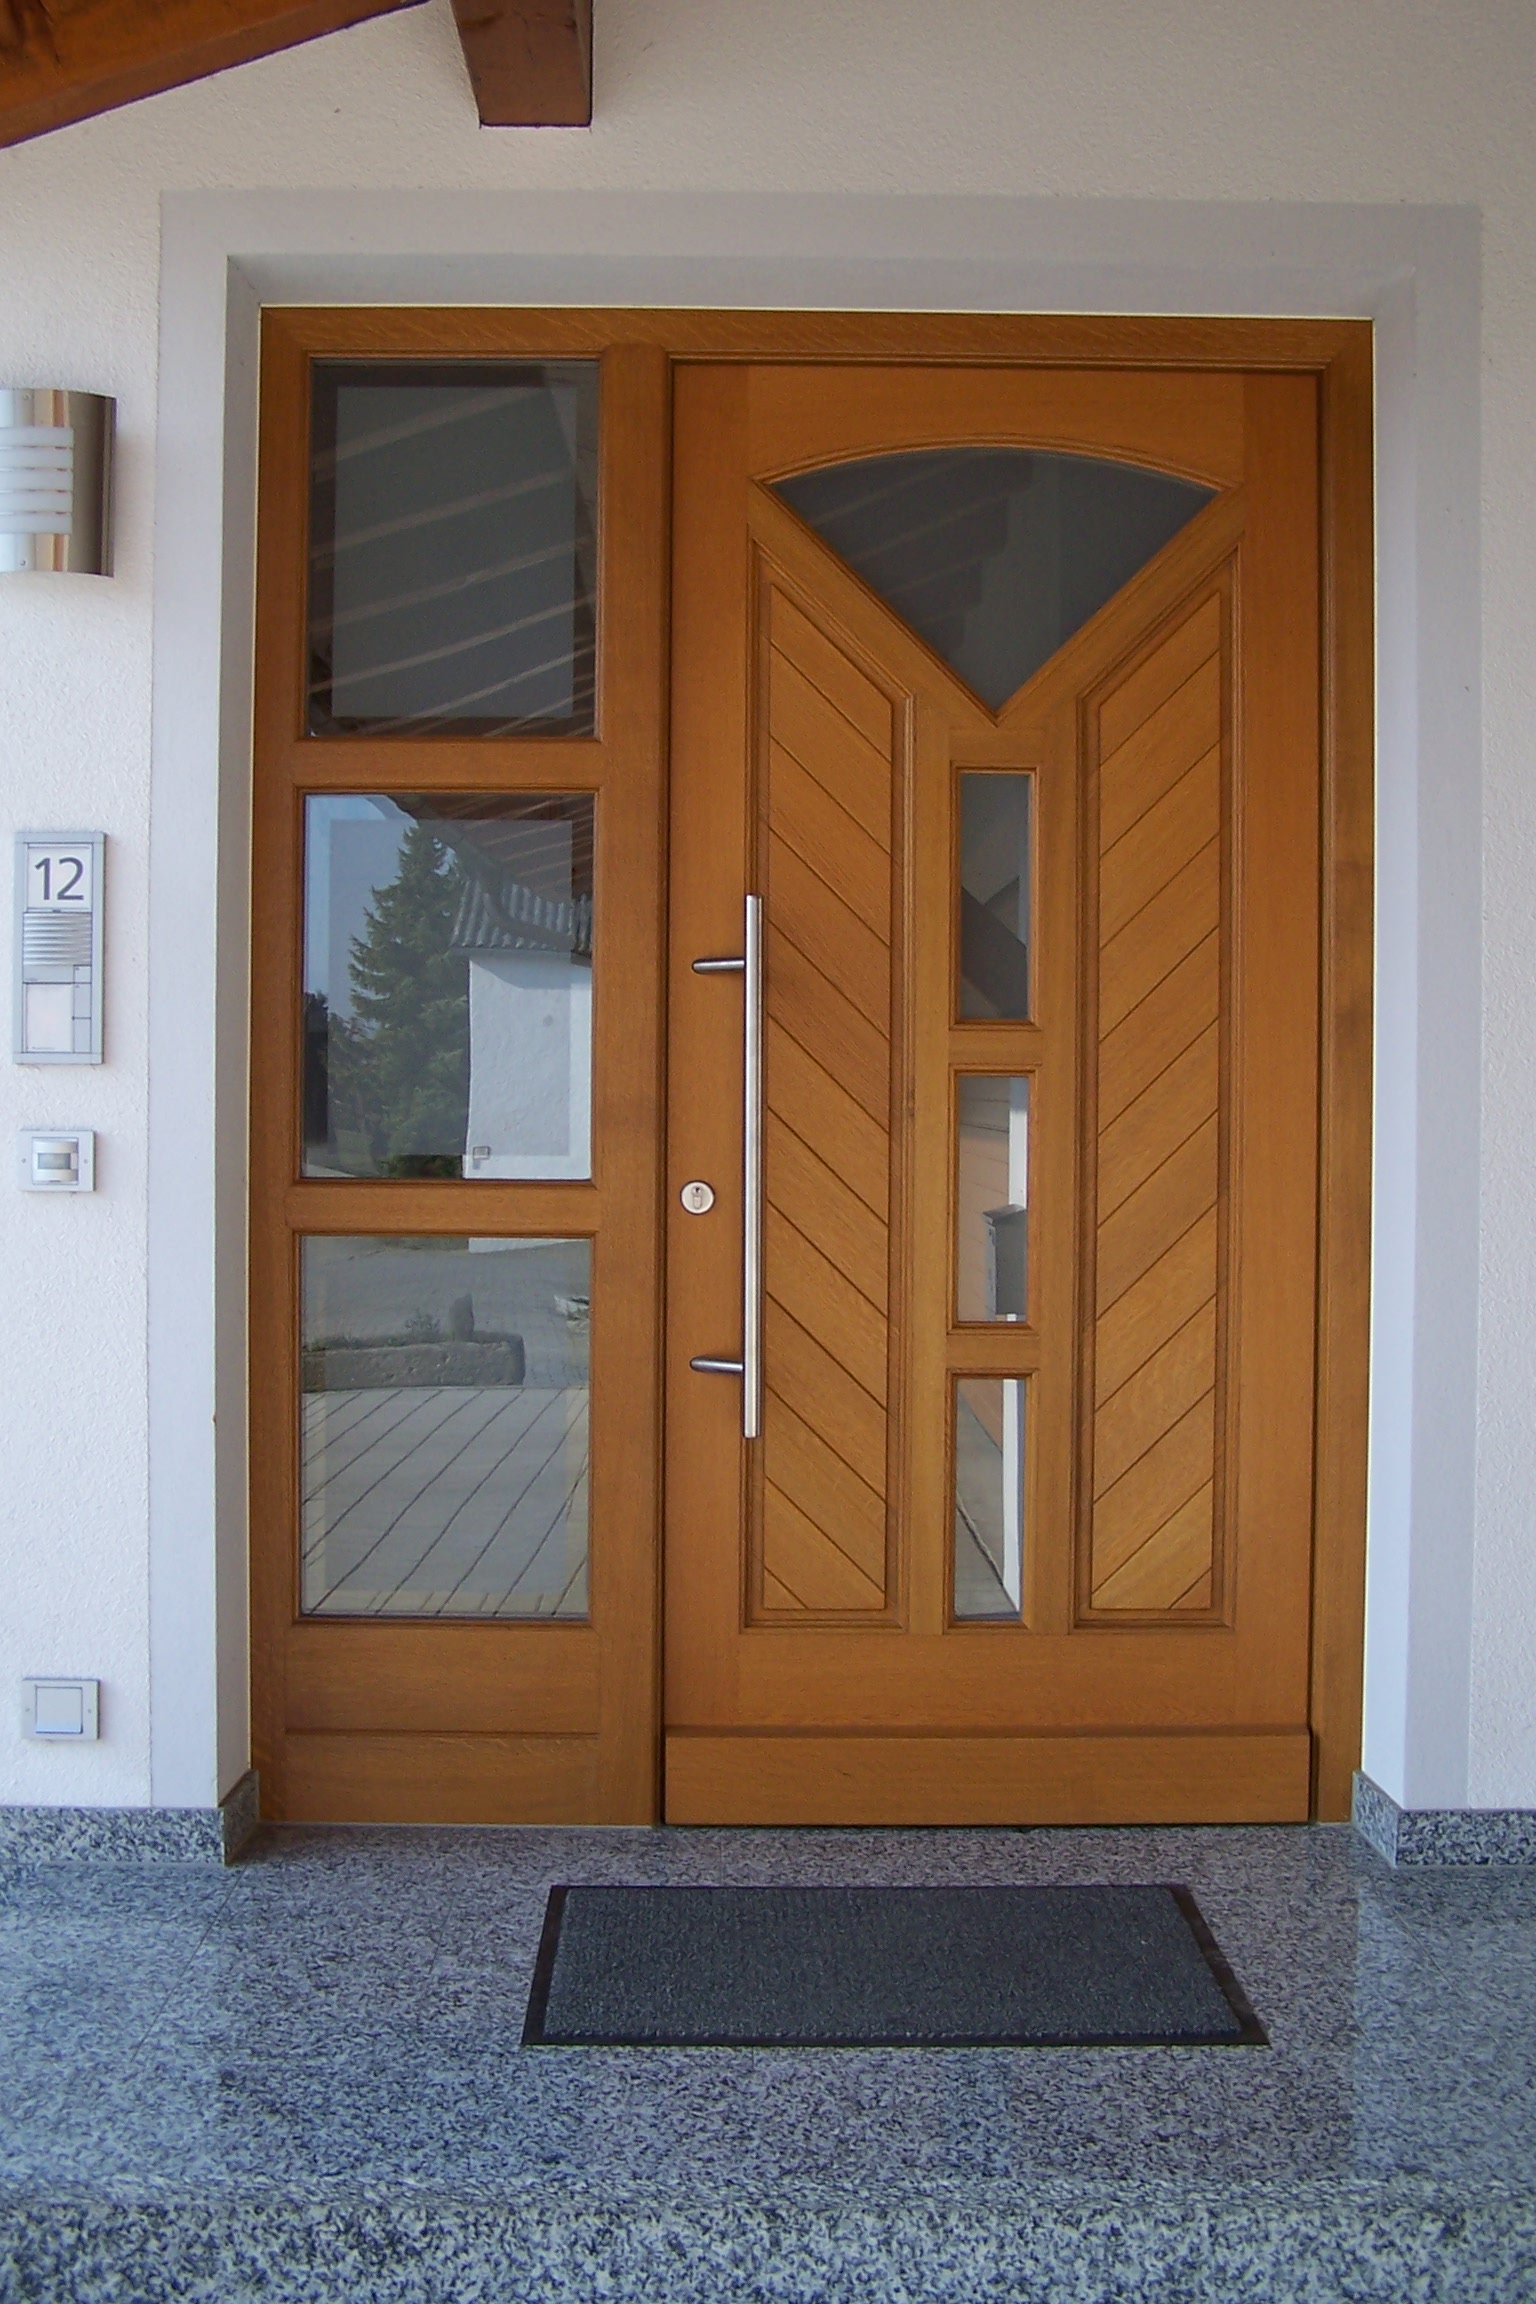 Haustüre aus Holz mit Fensterelementen und einem Seitenteil links mit drei Fenstern